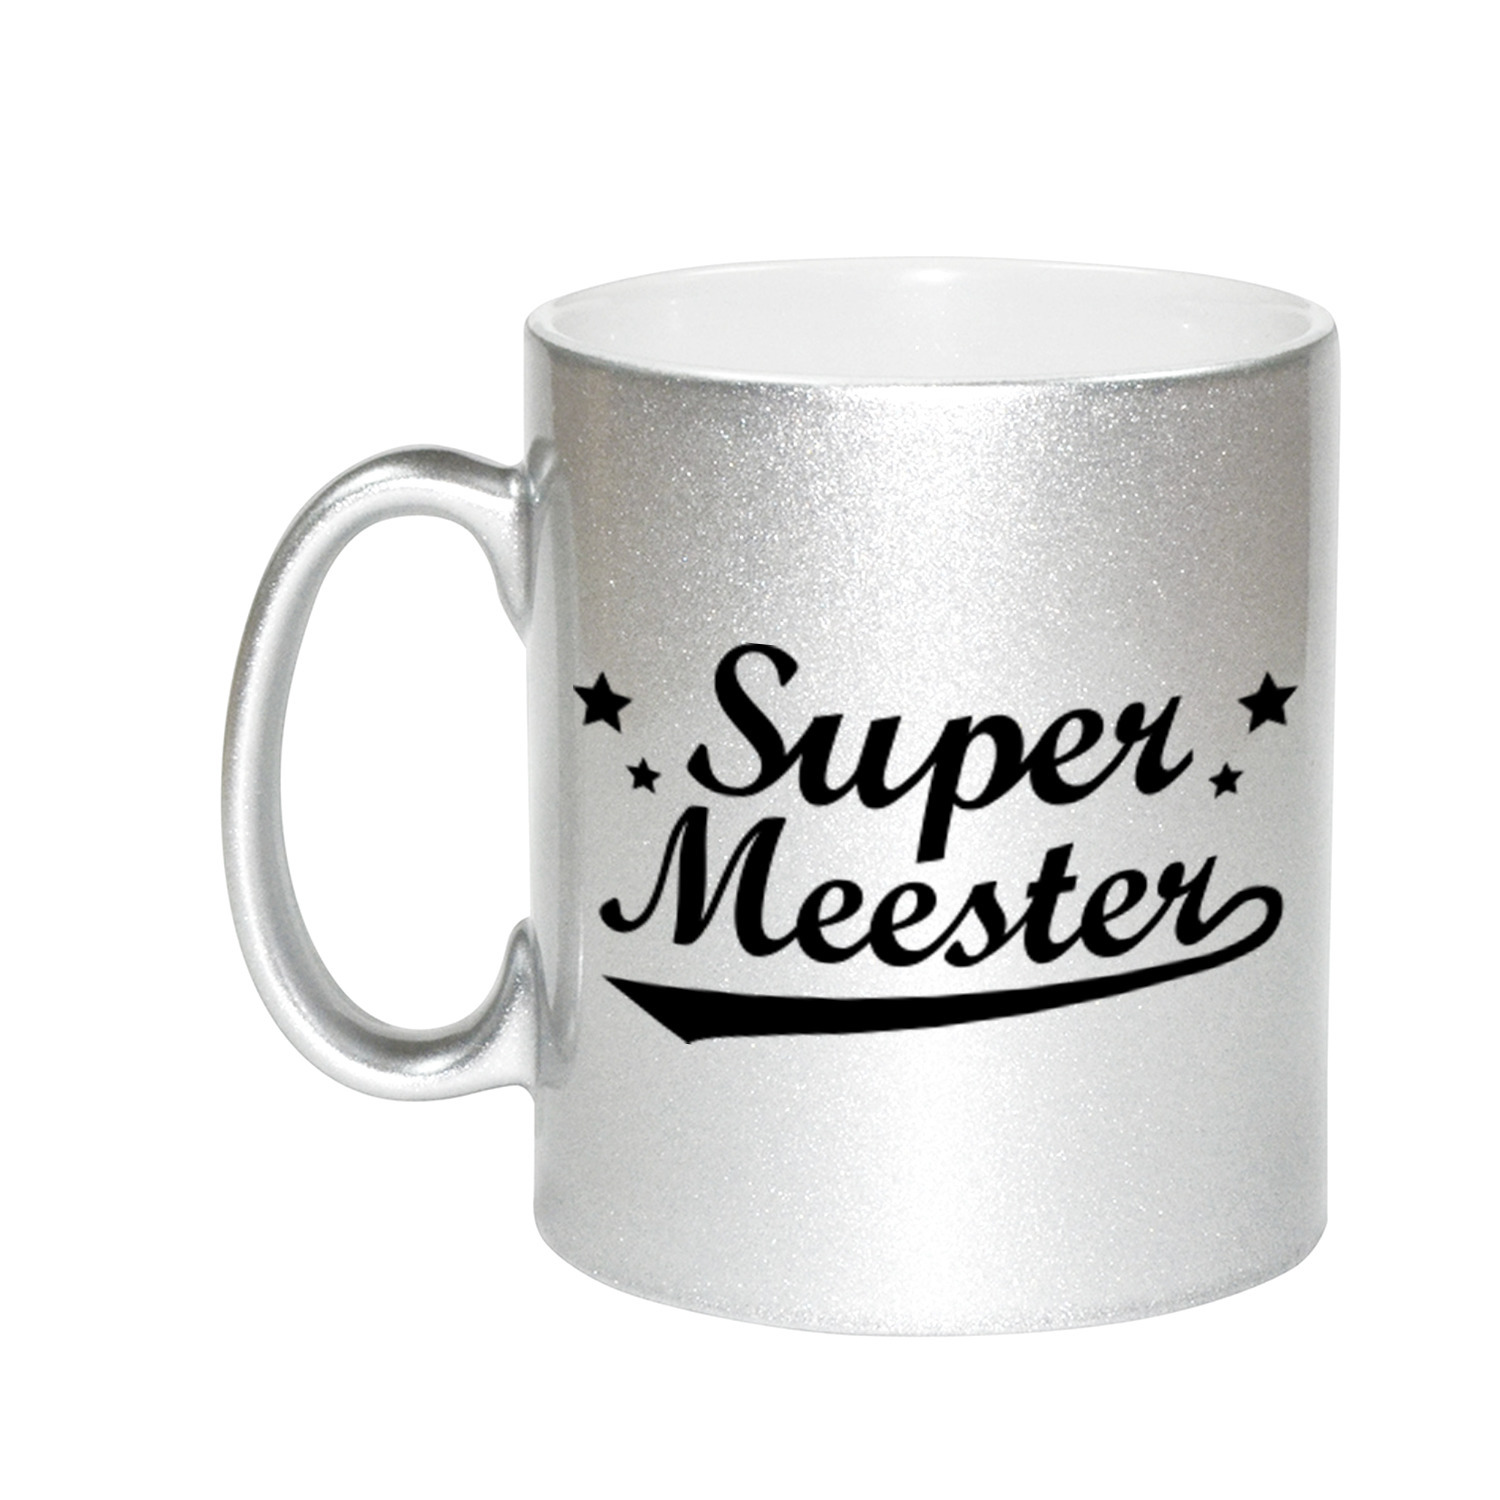 Super meester bedankt zilveren mok-beker 330 ml